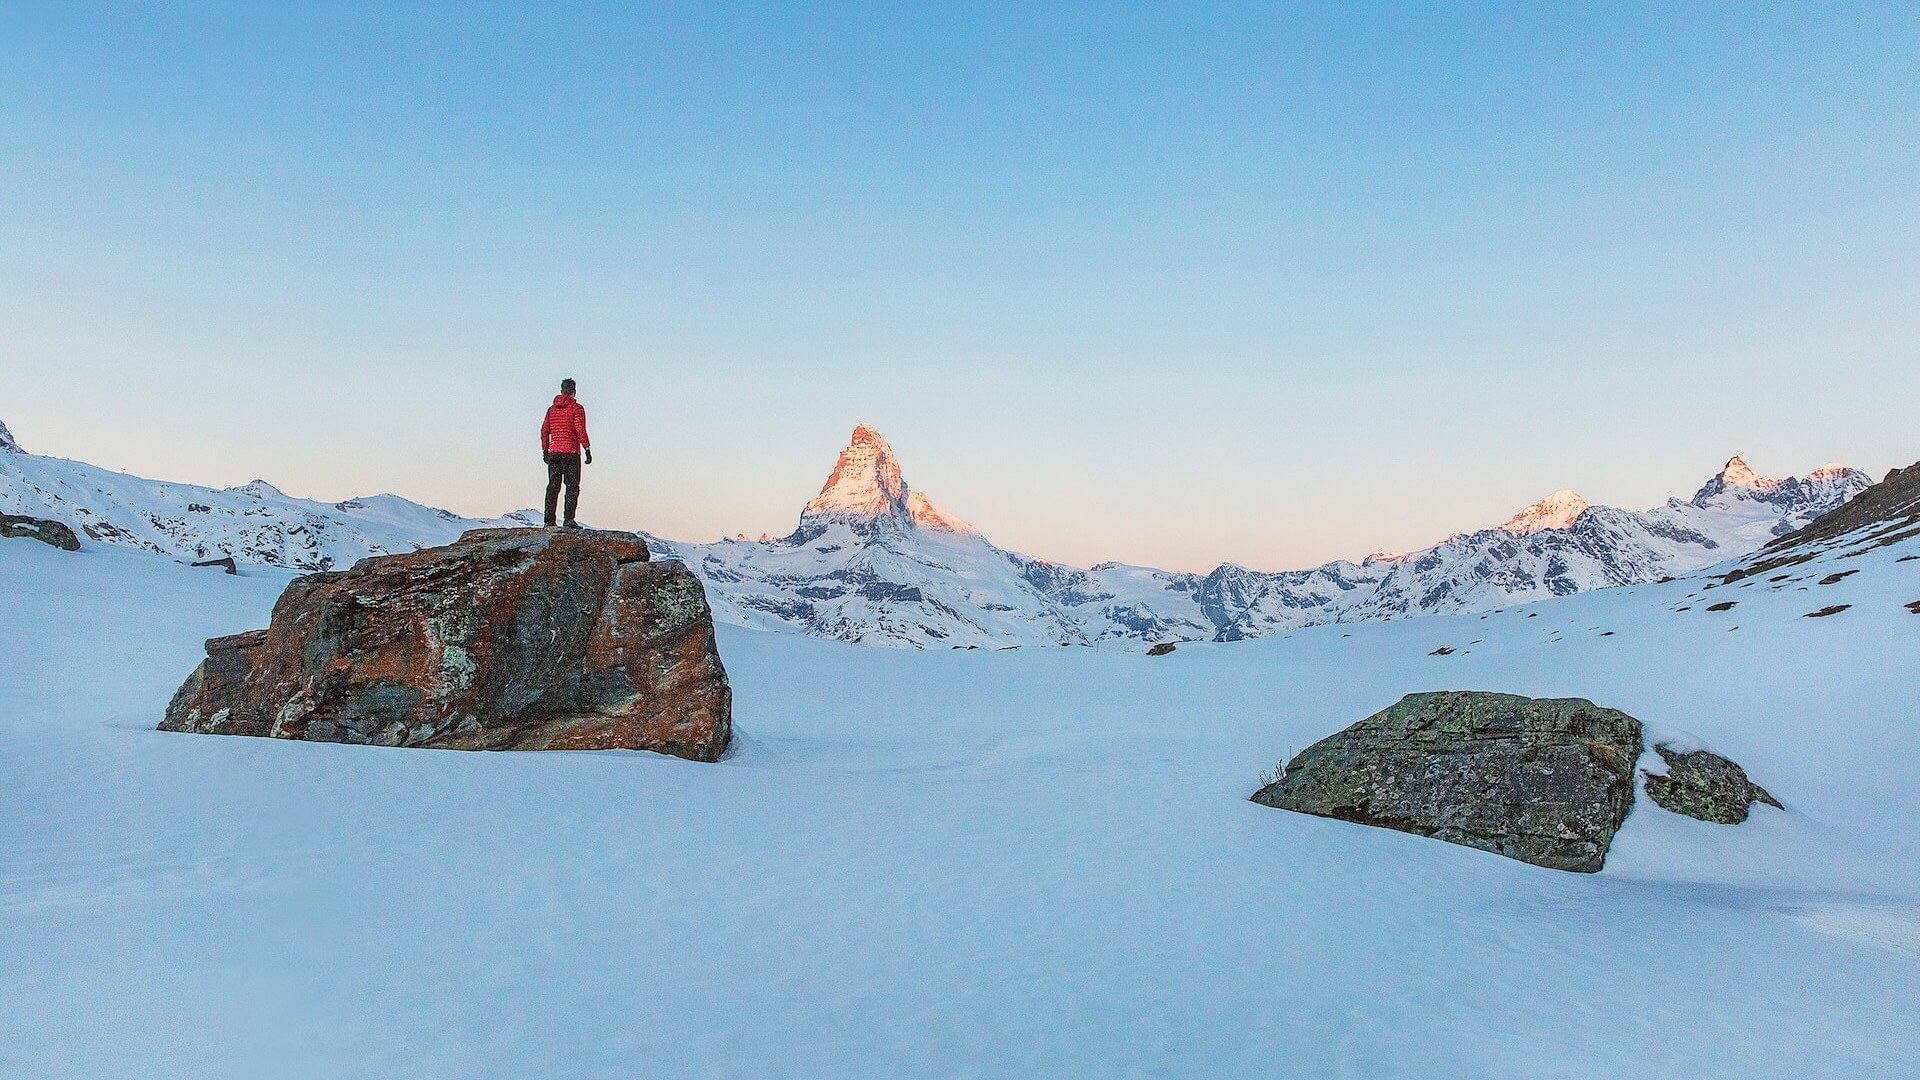 مخيمات الشتاء للتسلق في مدارس الإقامة السويسرية